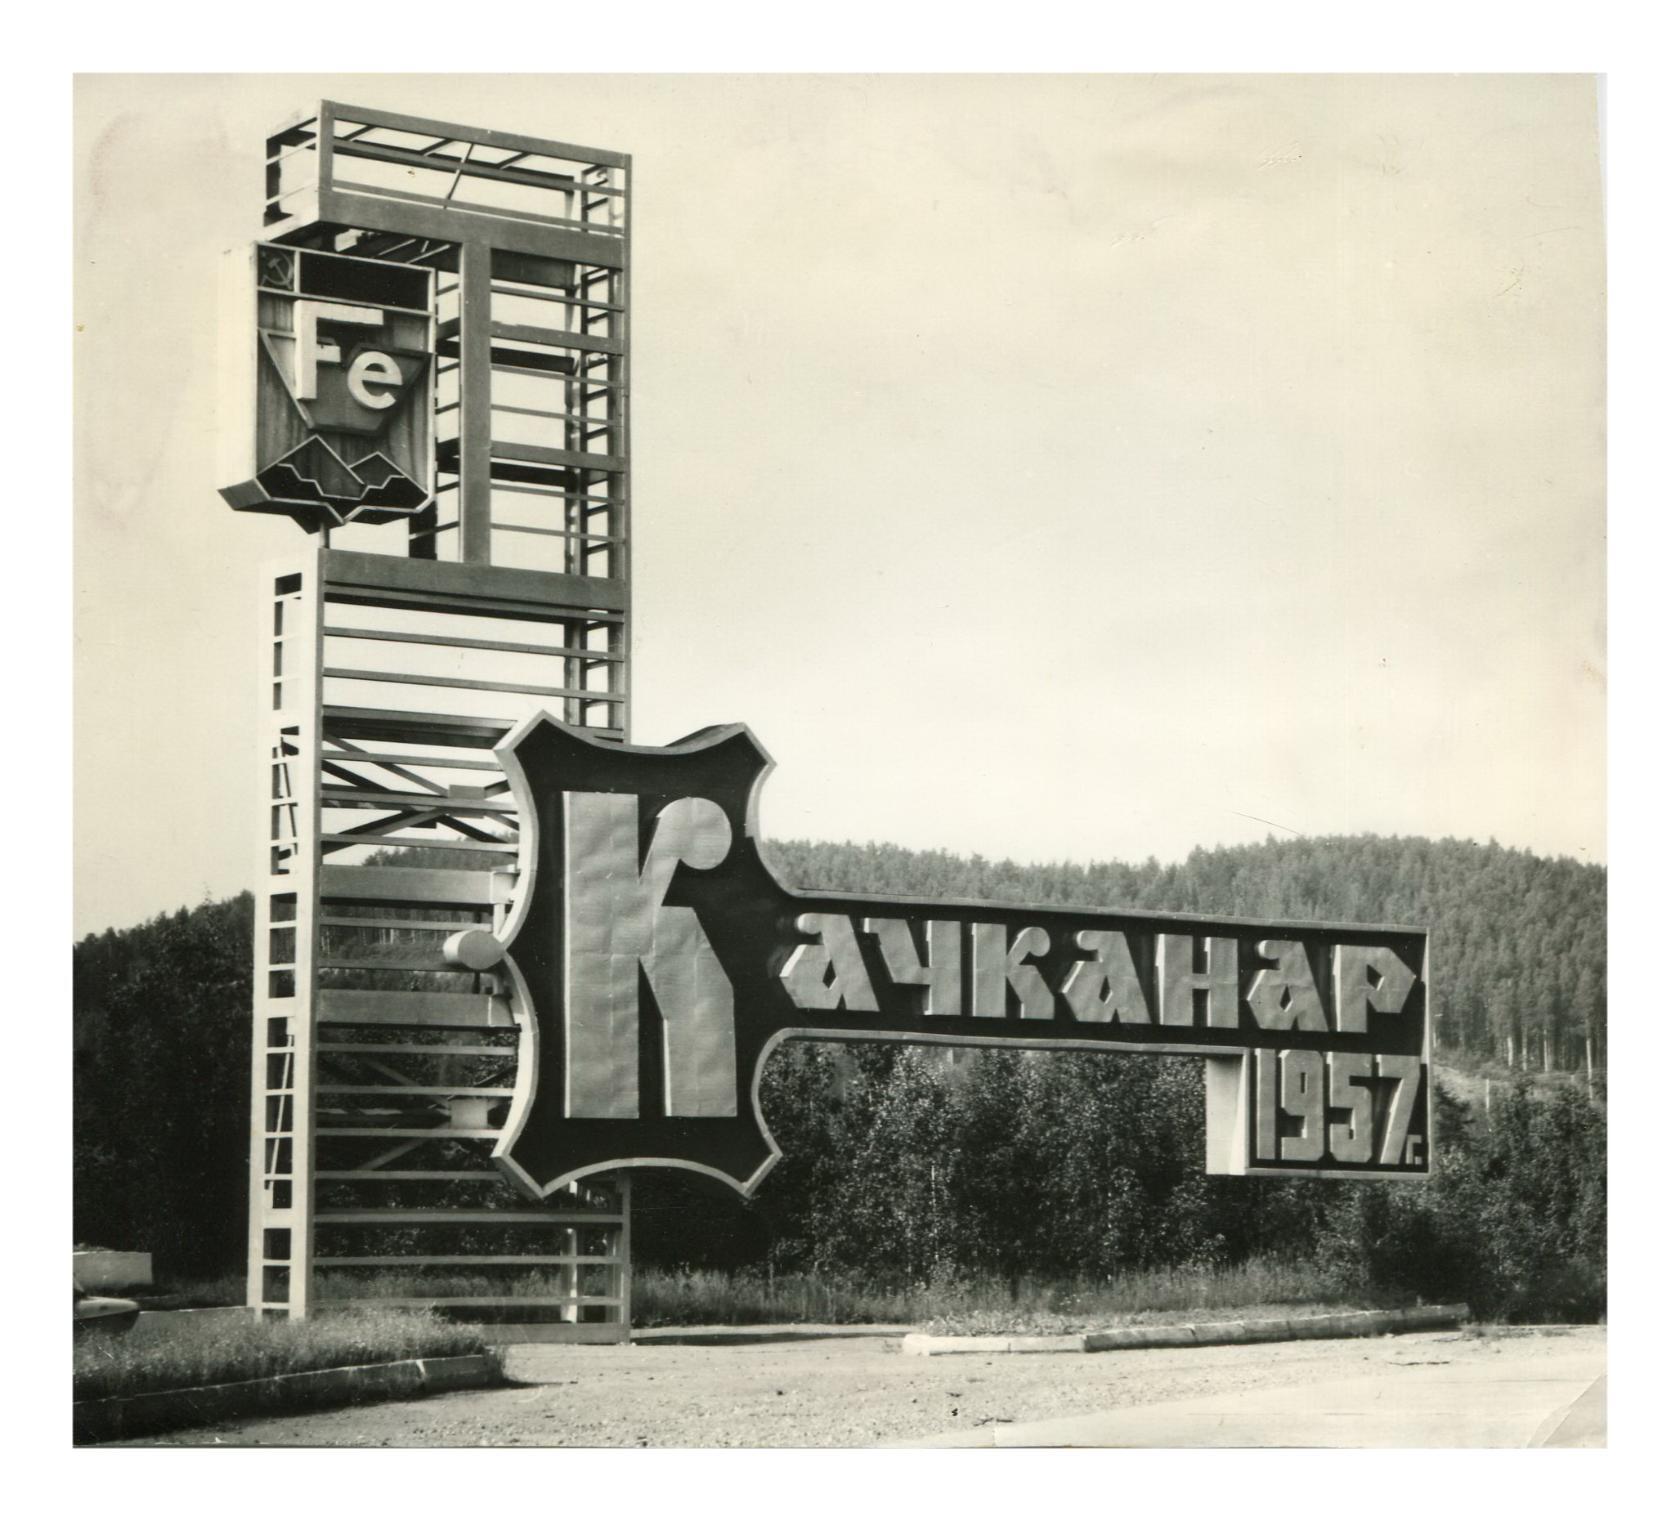 27 мая 1957 года у поселка Валериановск началась валка леса – прорубали дорогу к месту будущей стройки Качканарского горно-обогатительного комбината, который в свою очередь дал жизнь новому городу Качканару